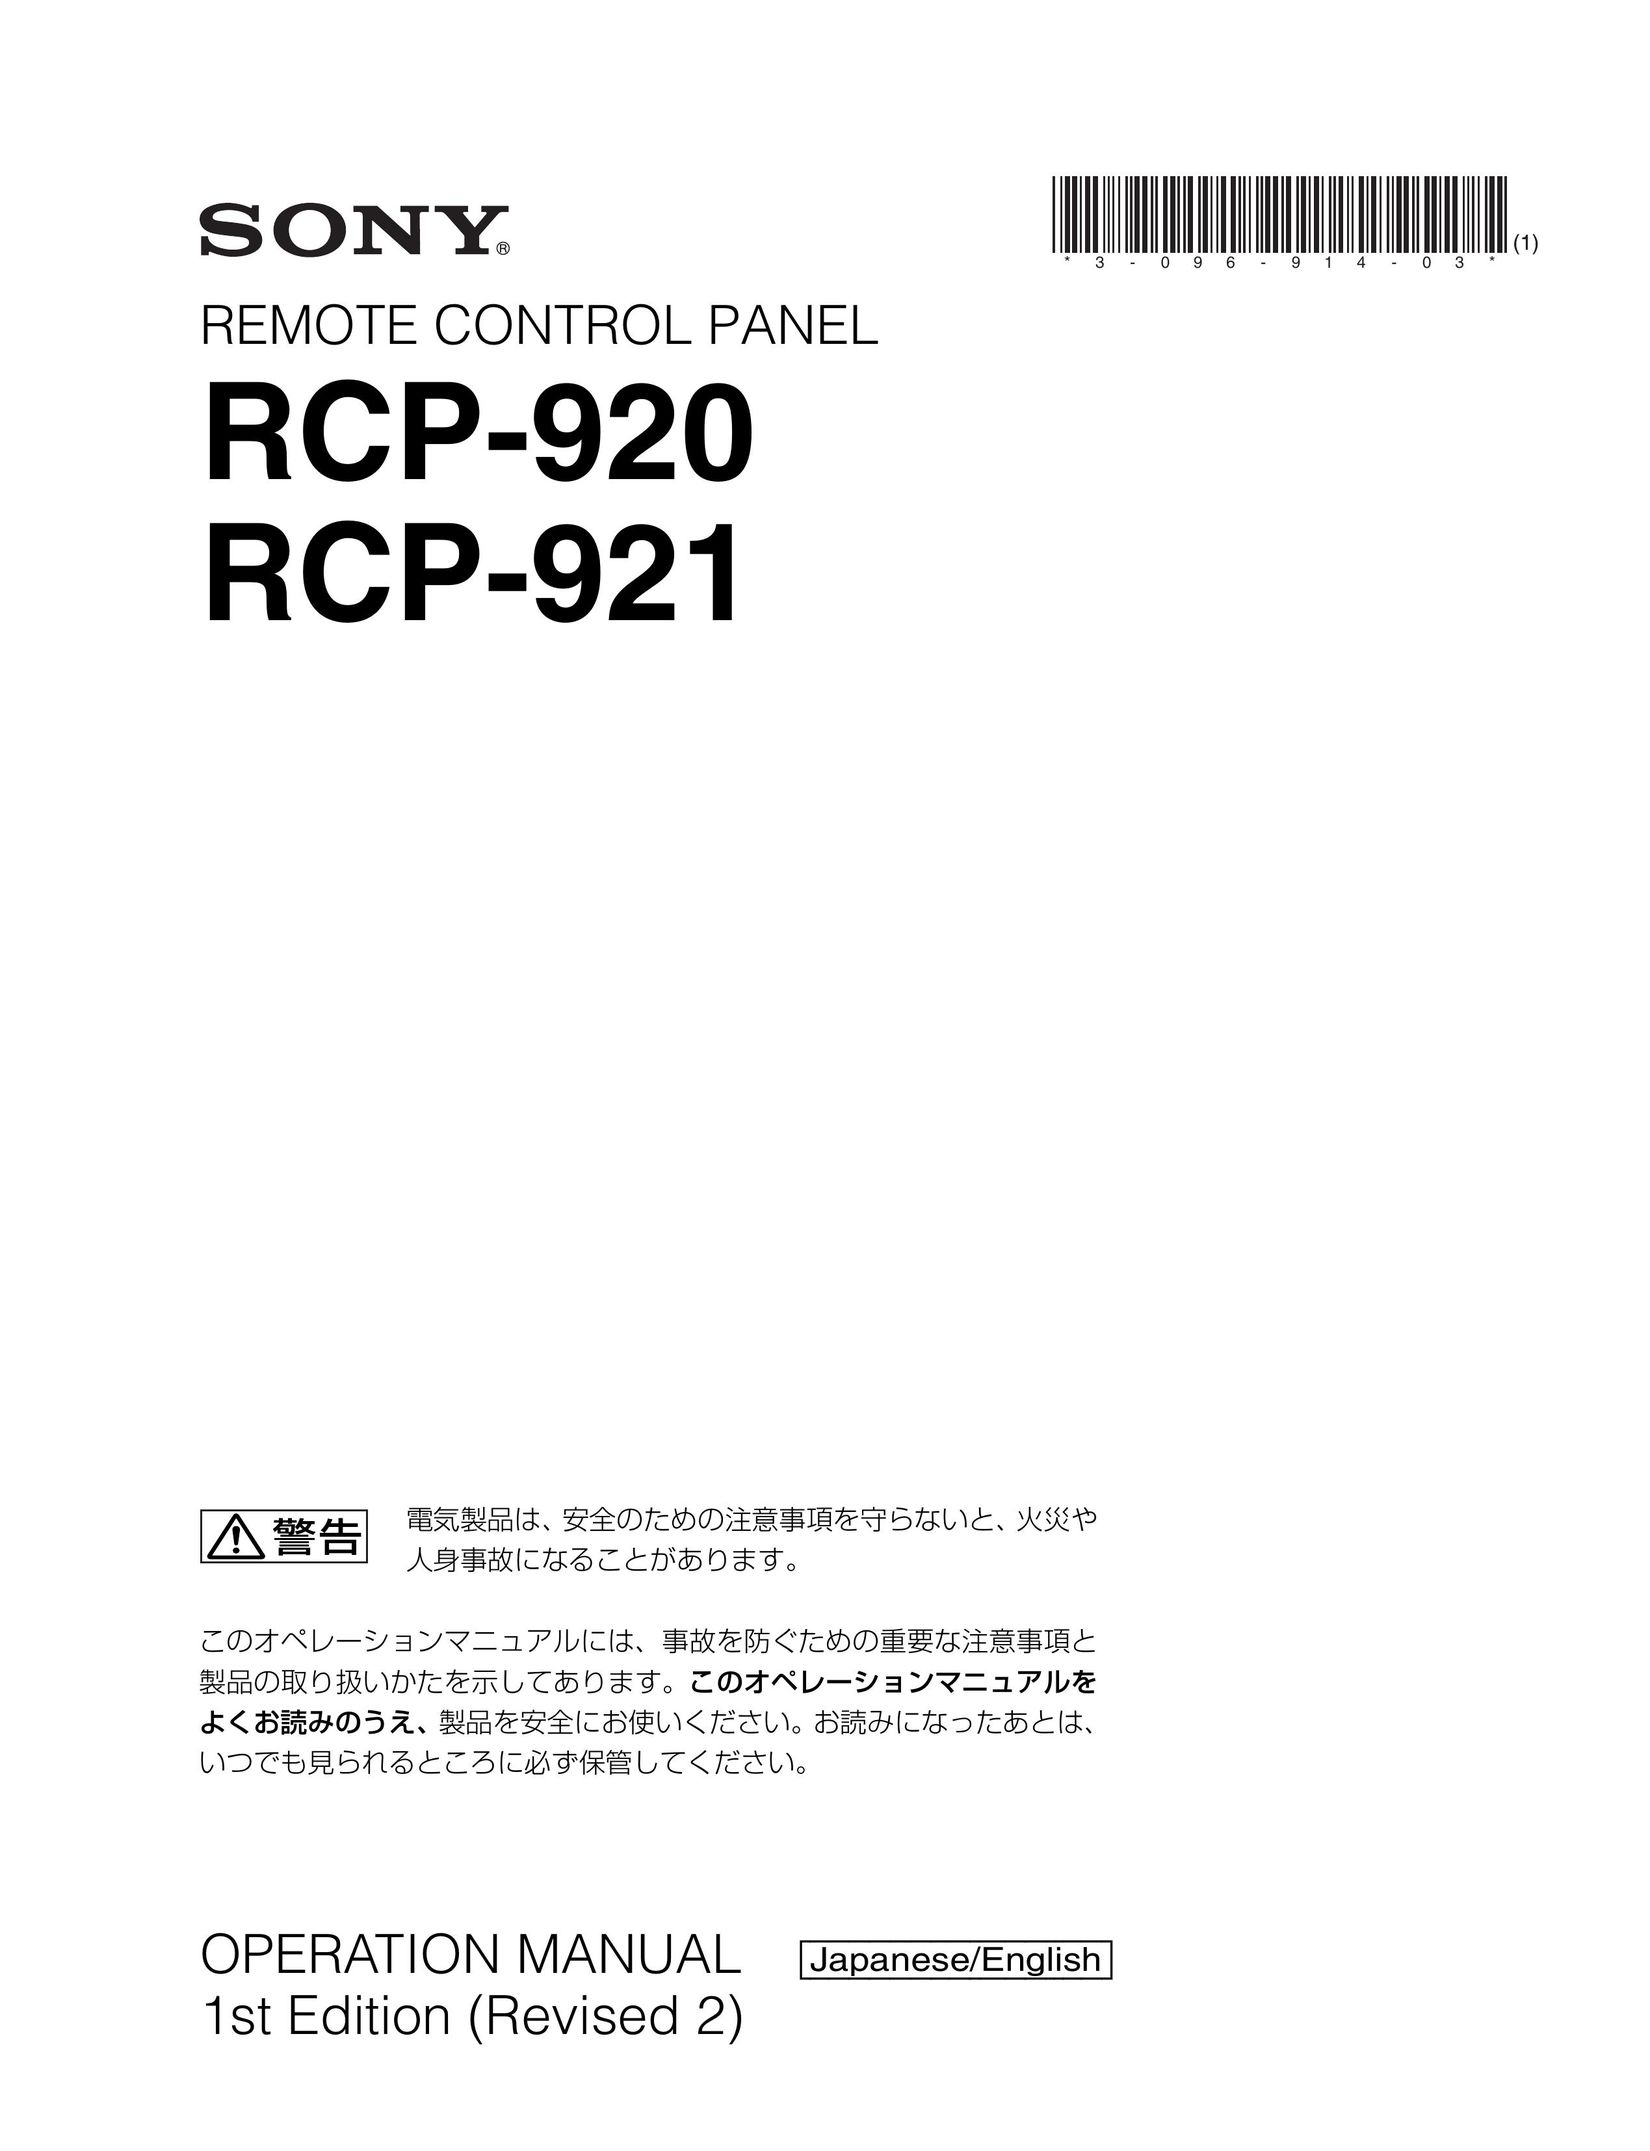 Sony RCP 920 Garage Door Opener User Manual